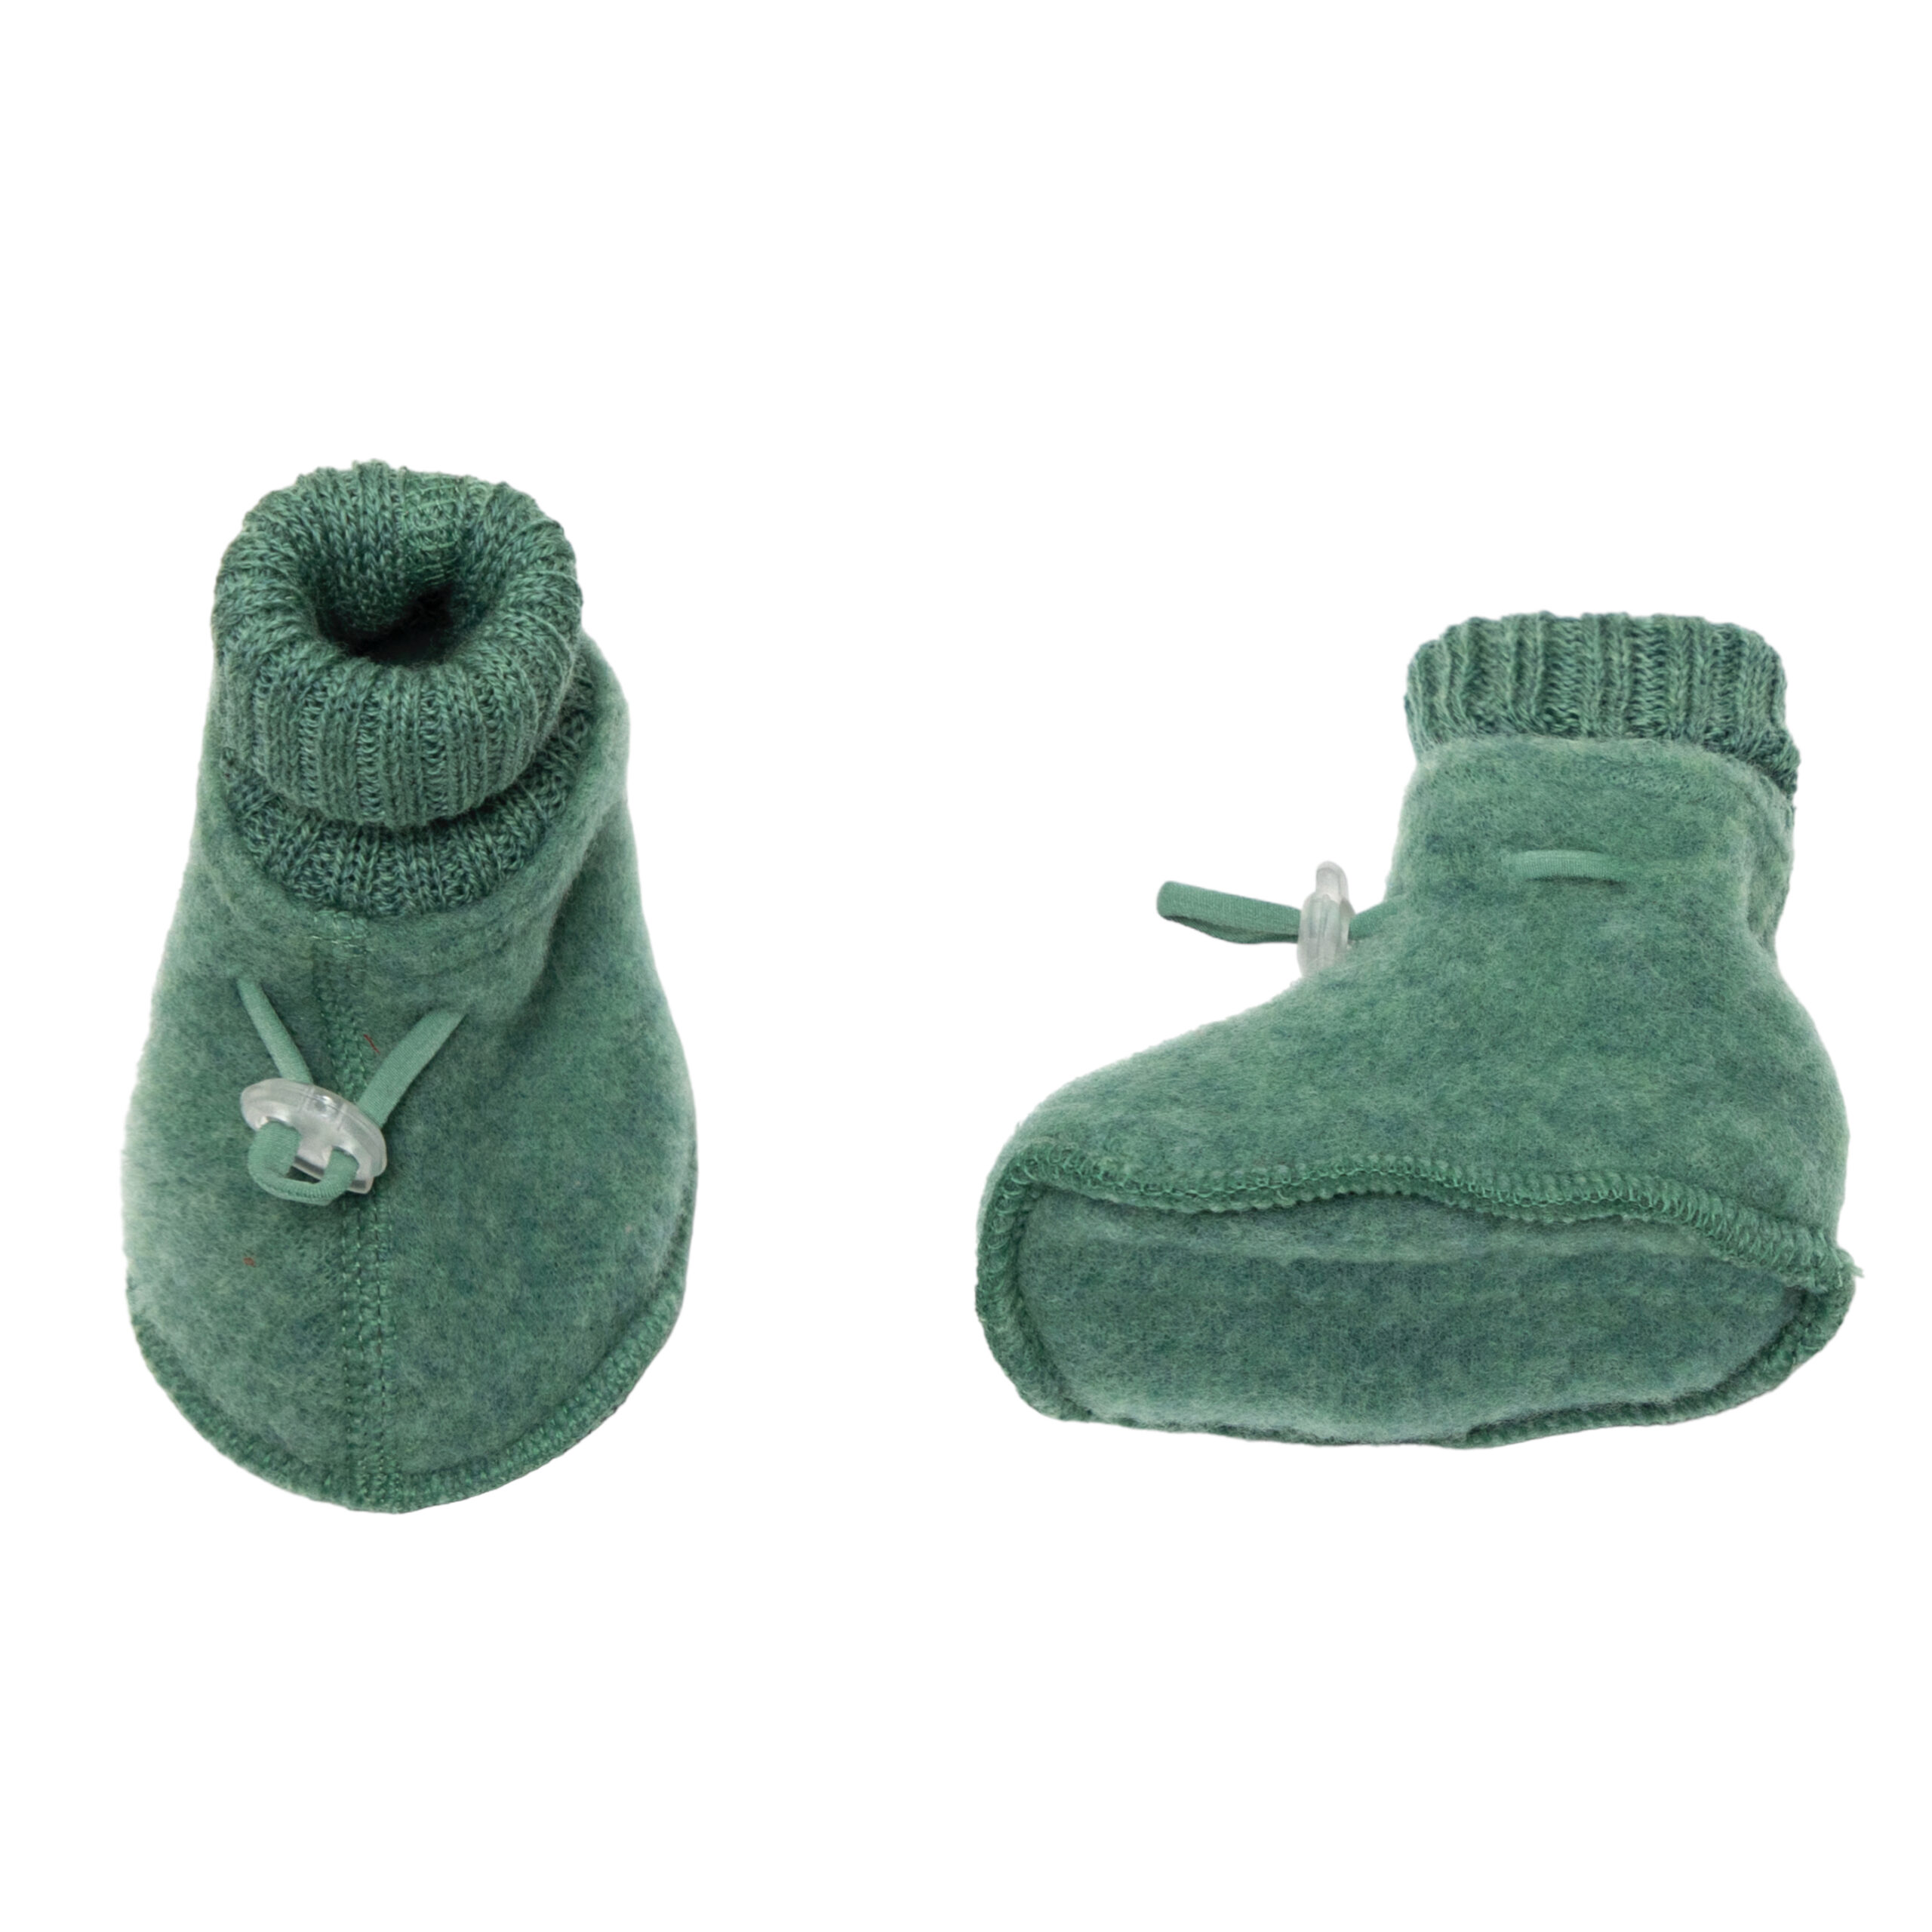 Joha Special Edition, meriinofliisist papud, Green Villariided - HellyK - Kvaliteetsed lasteriided, villariided, barefoot jalatsid